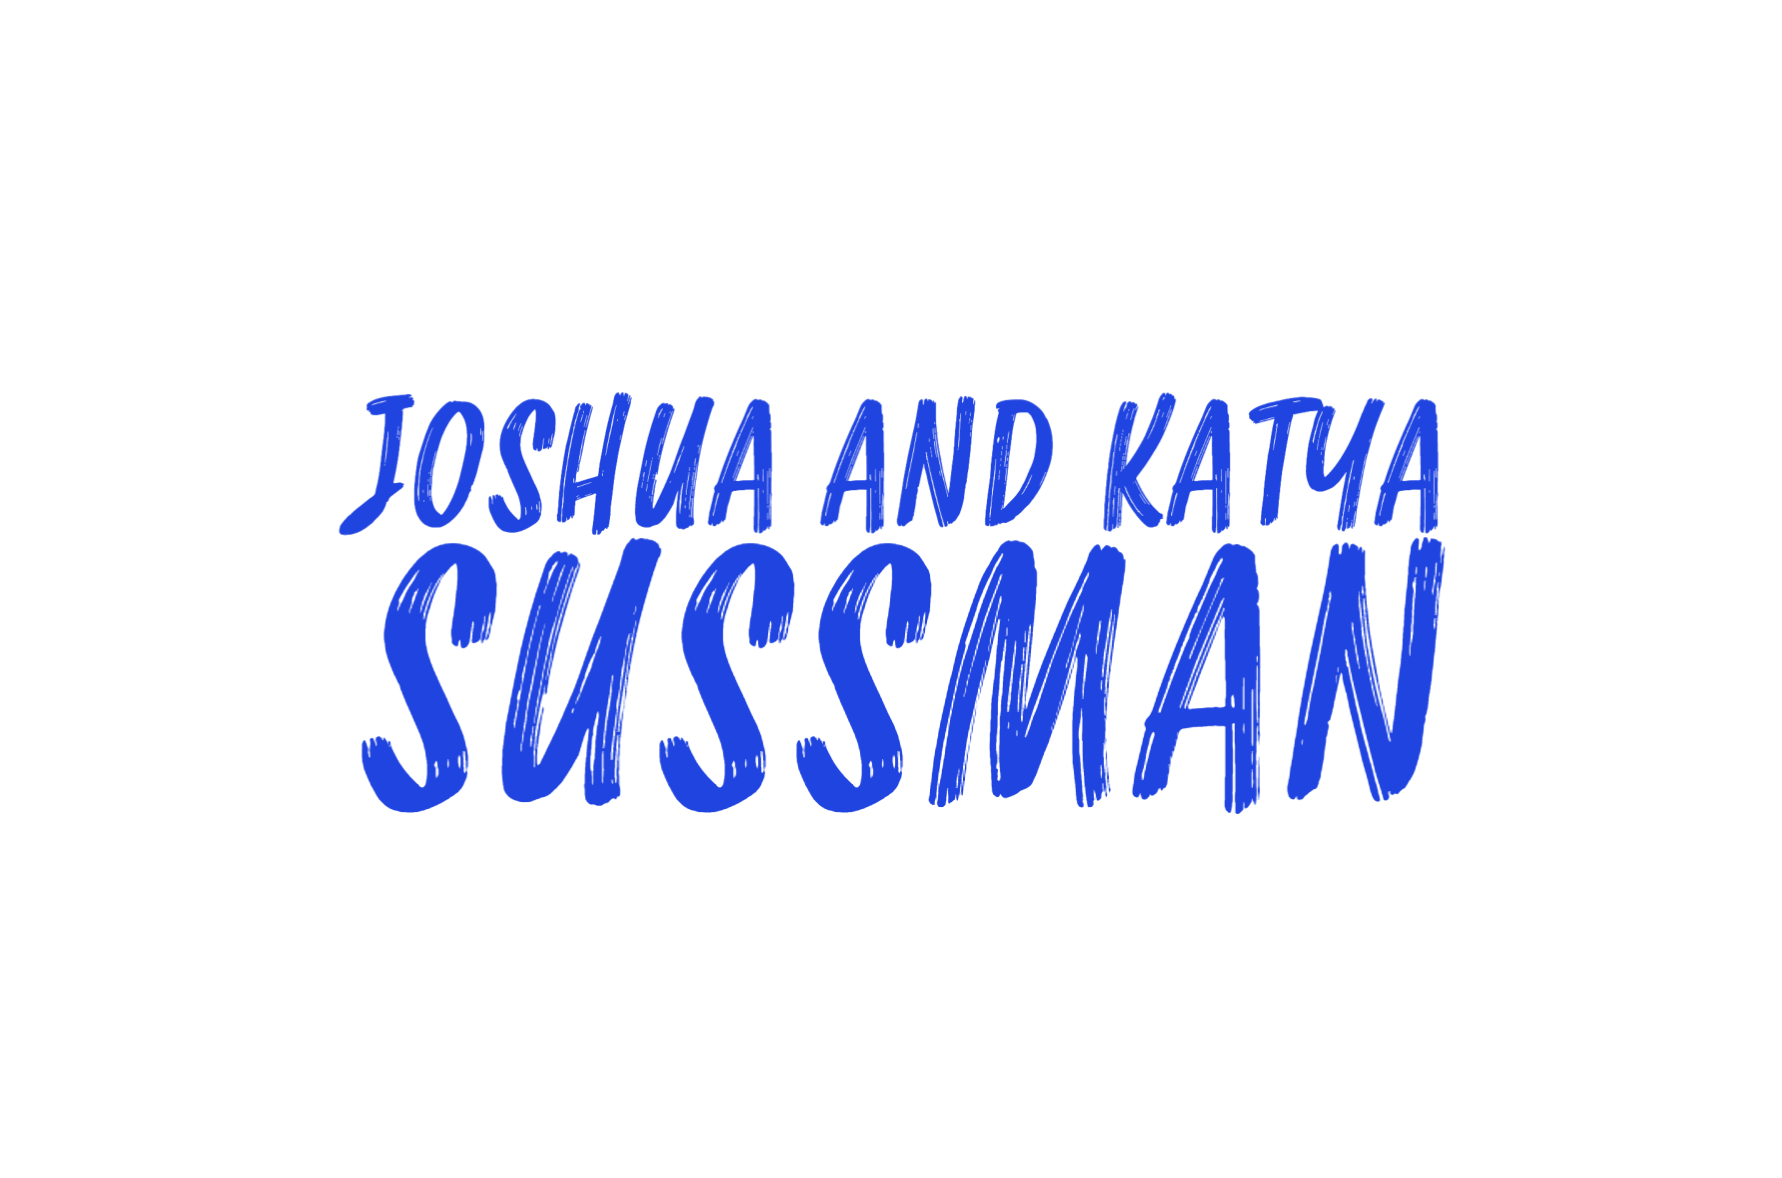 OIC_Joshua and Katya Sussman_logo